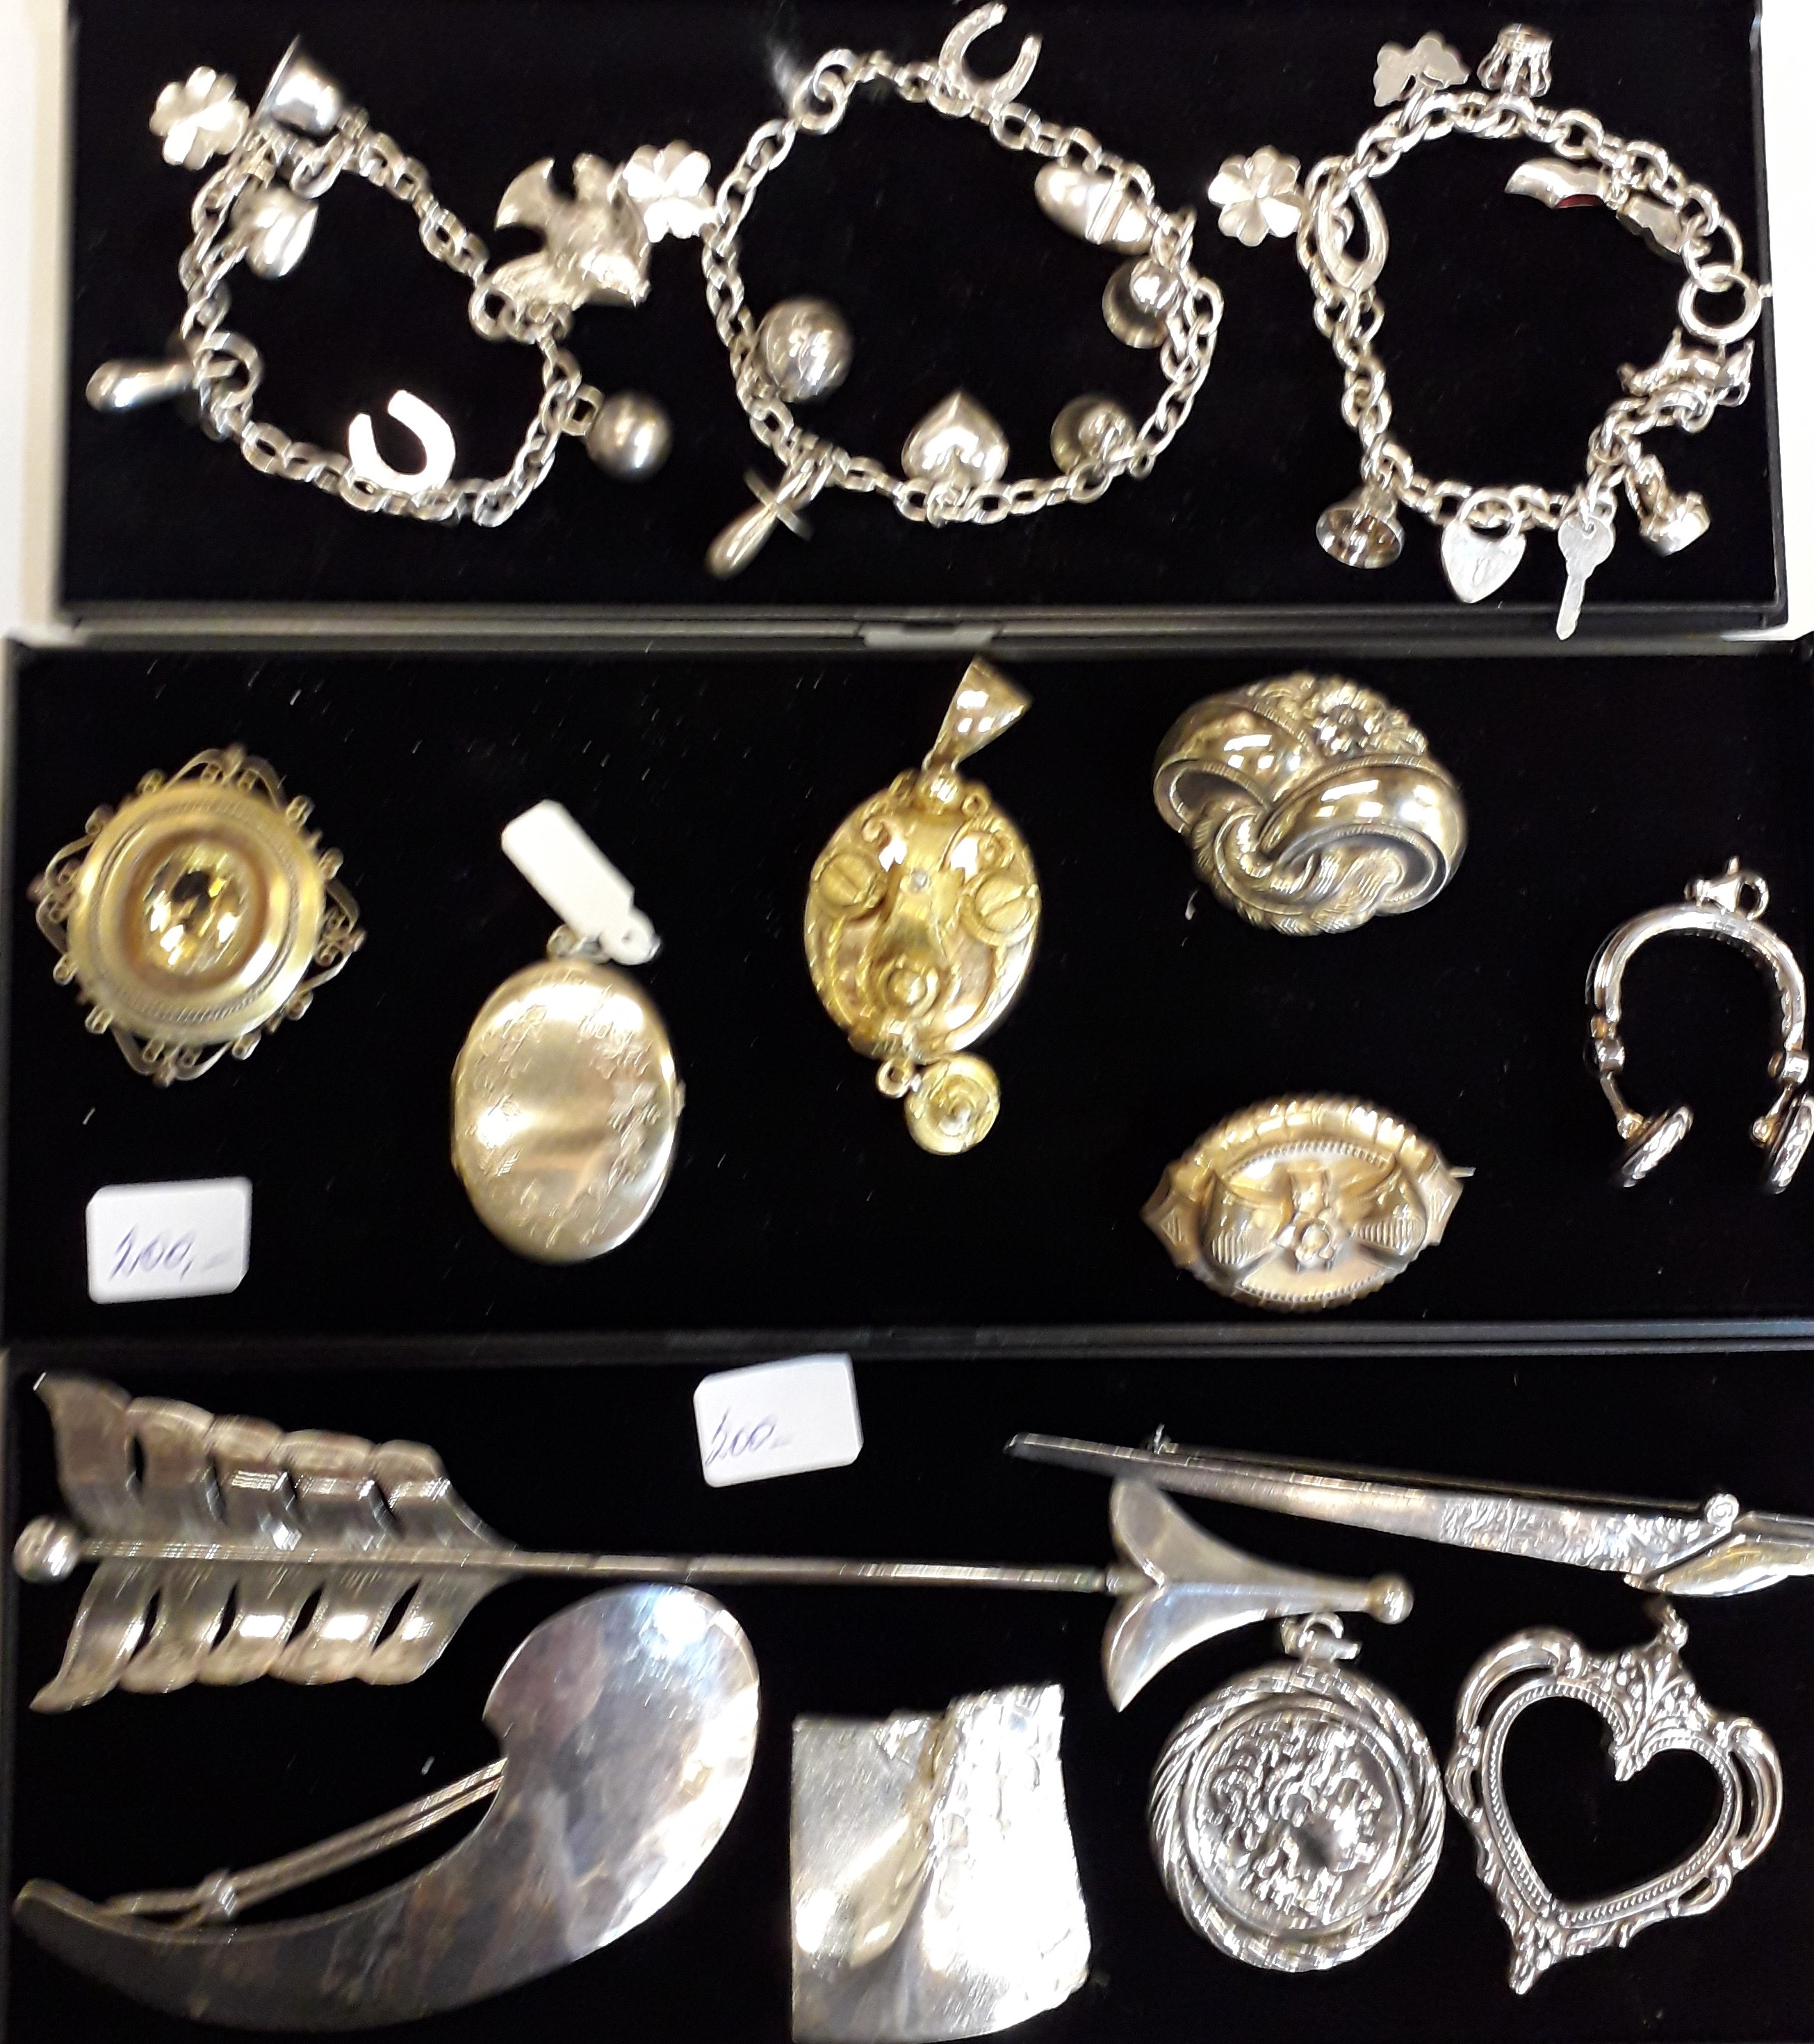 Virksomhedsbeskrivelse Illustrer Nævne SMYKKER, BILLIGE sølv sølvsmykker brugte gamle antikke købes sælges